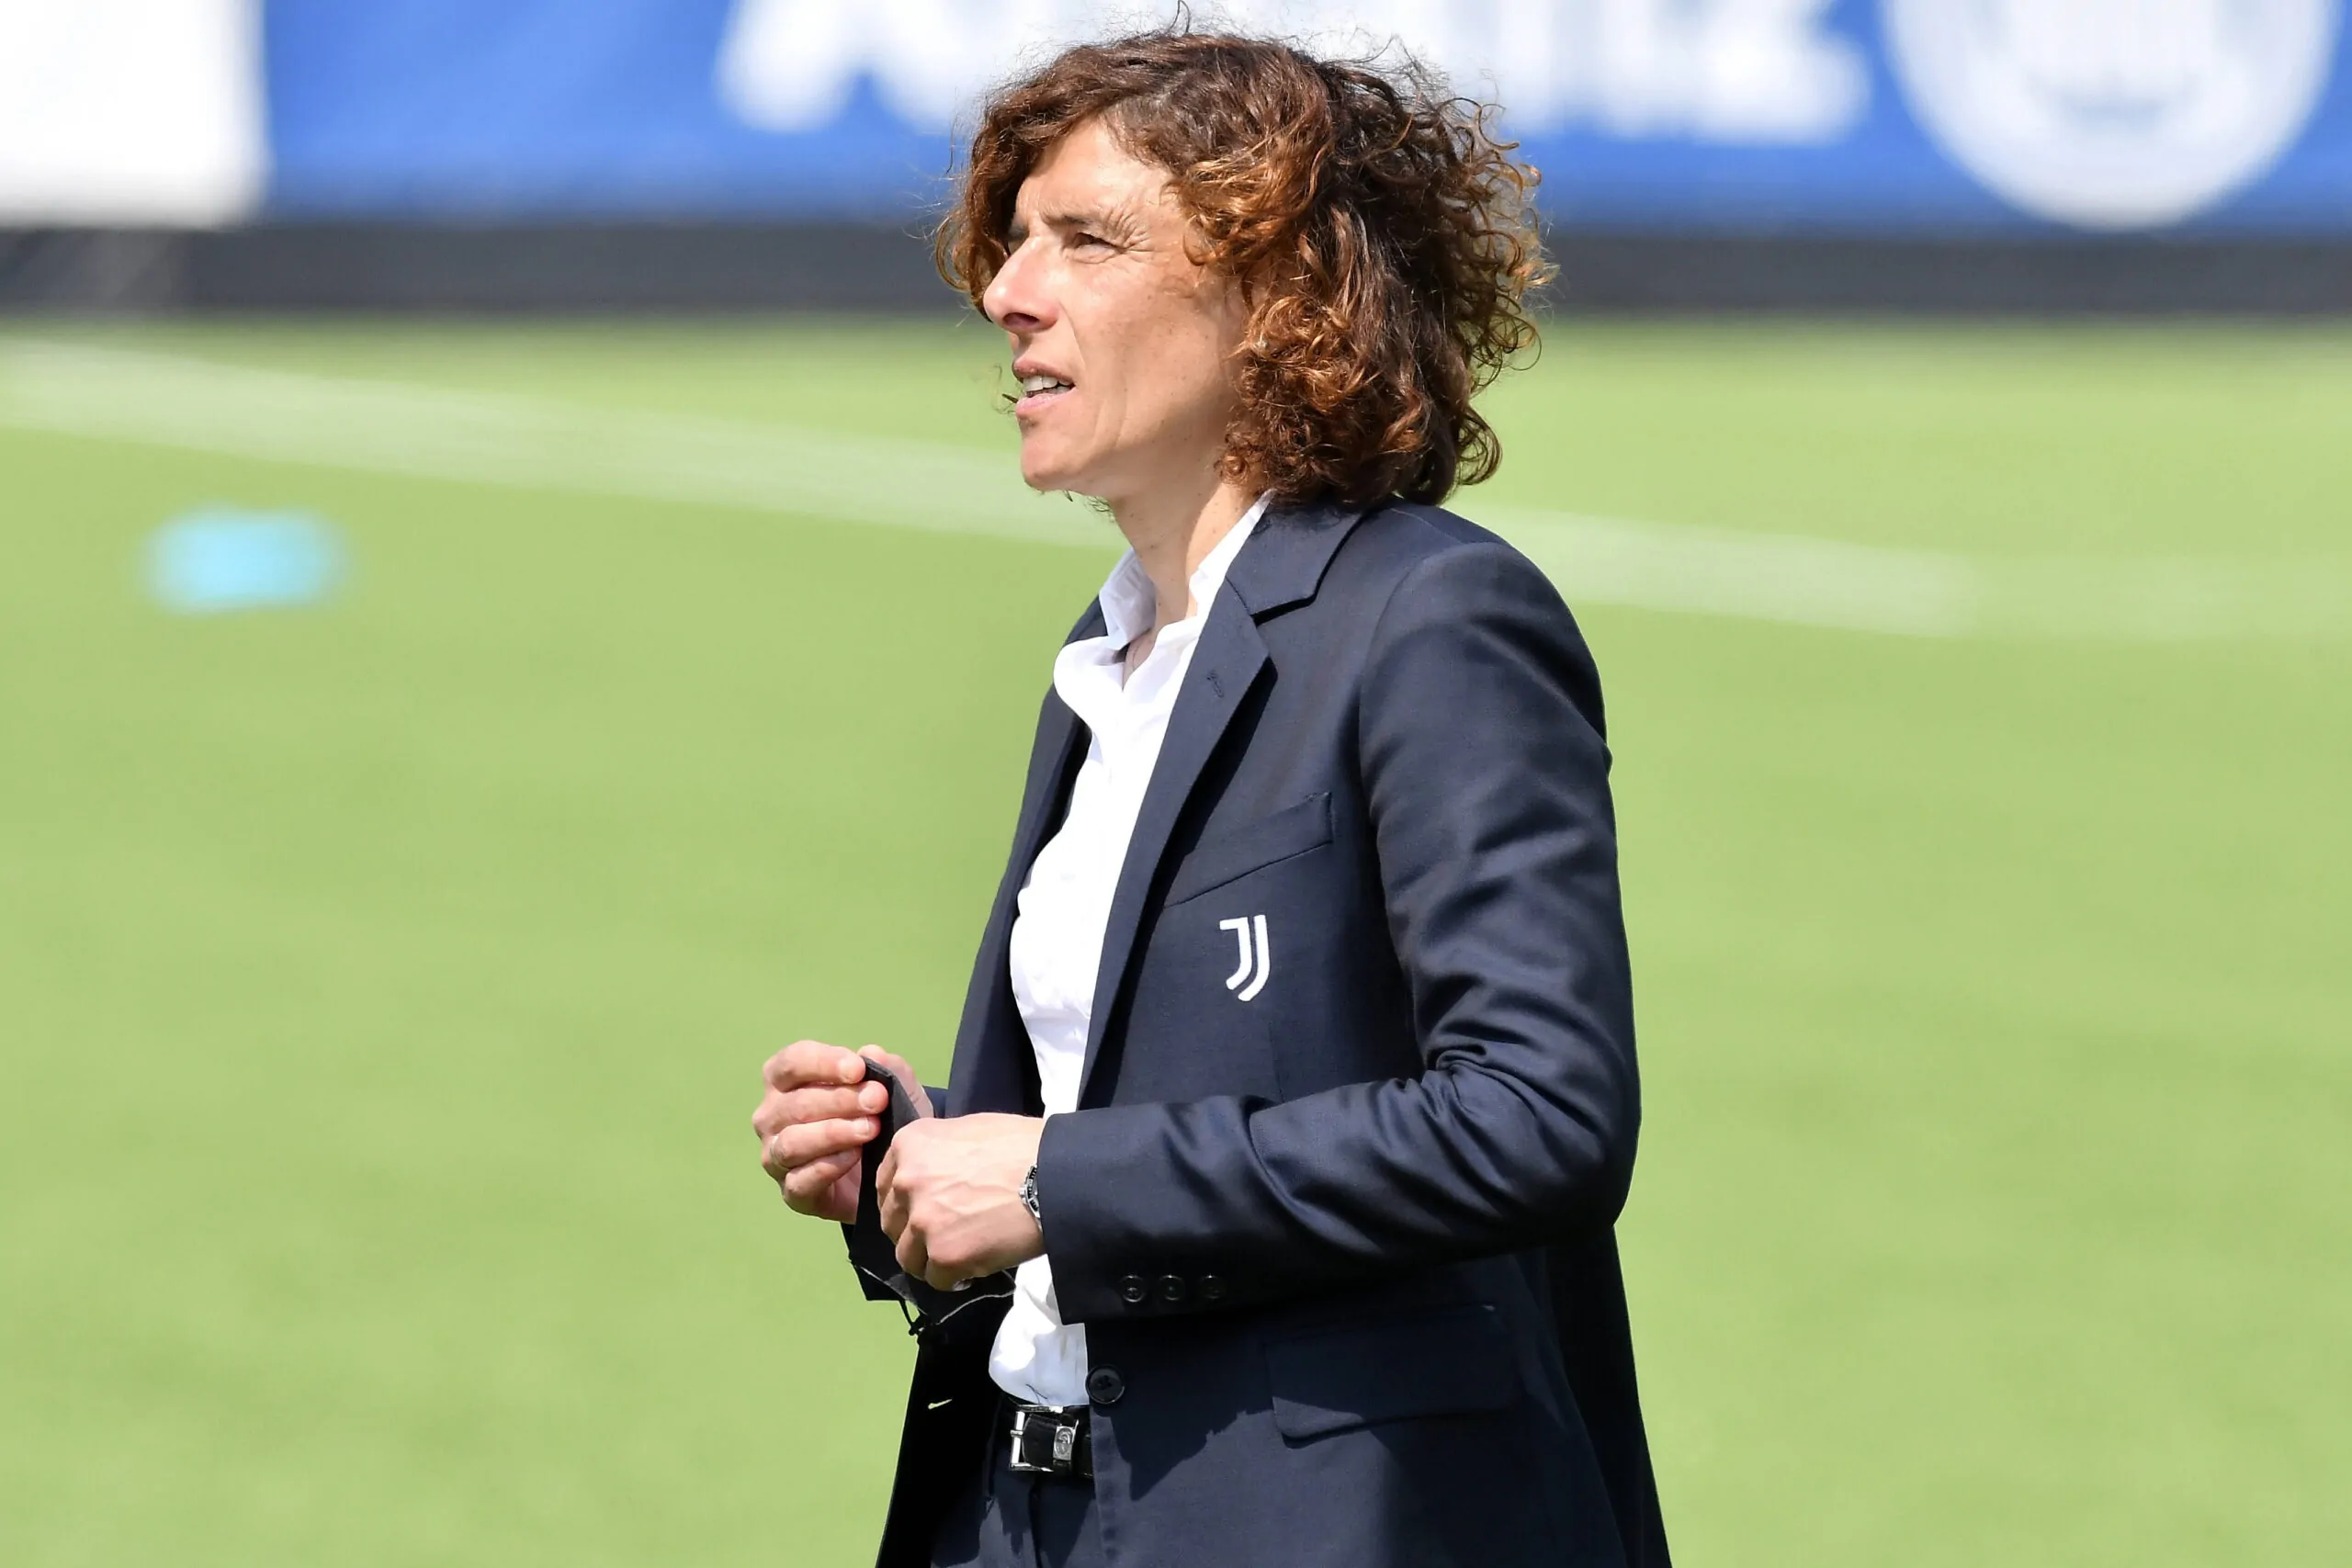 UFFICIALE – Juventus Women: risolto il contratto di Rita Guarino, allenerà l’Inter femminile